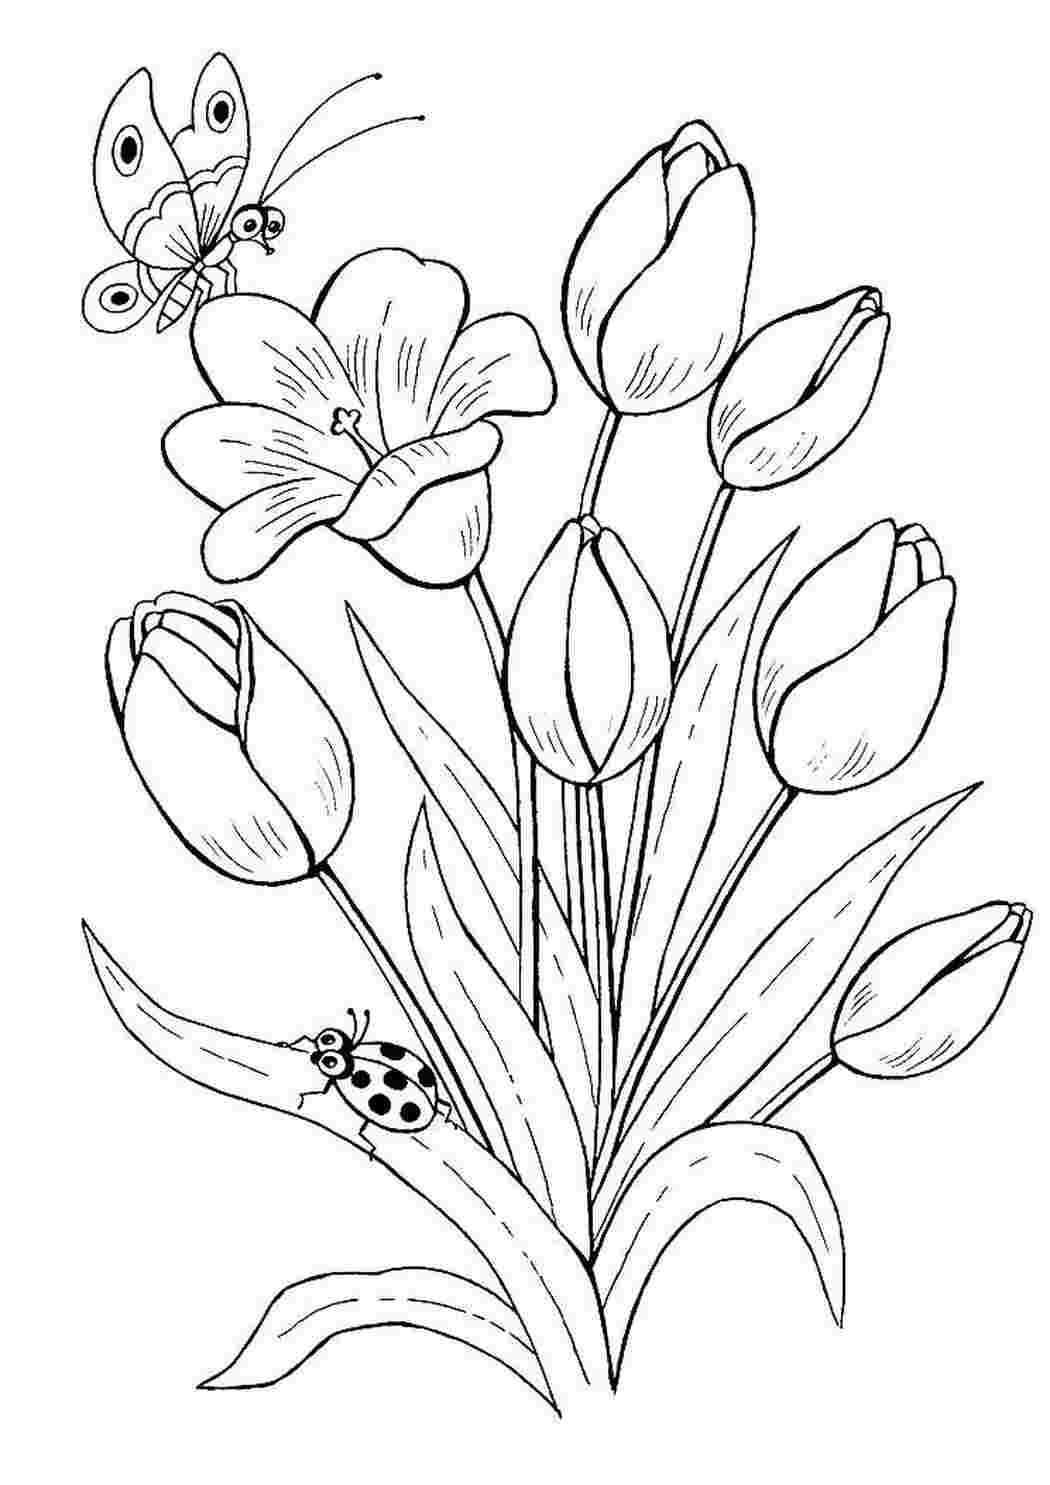 Раскраски Тюльпаны и бабочка. Раскраска. Тюльпаны и бабочка. Распечатать раскраски на сайте.